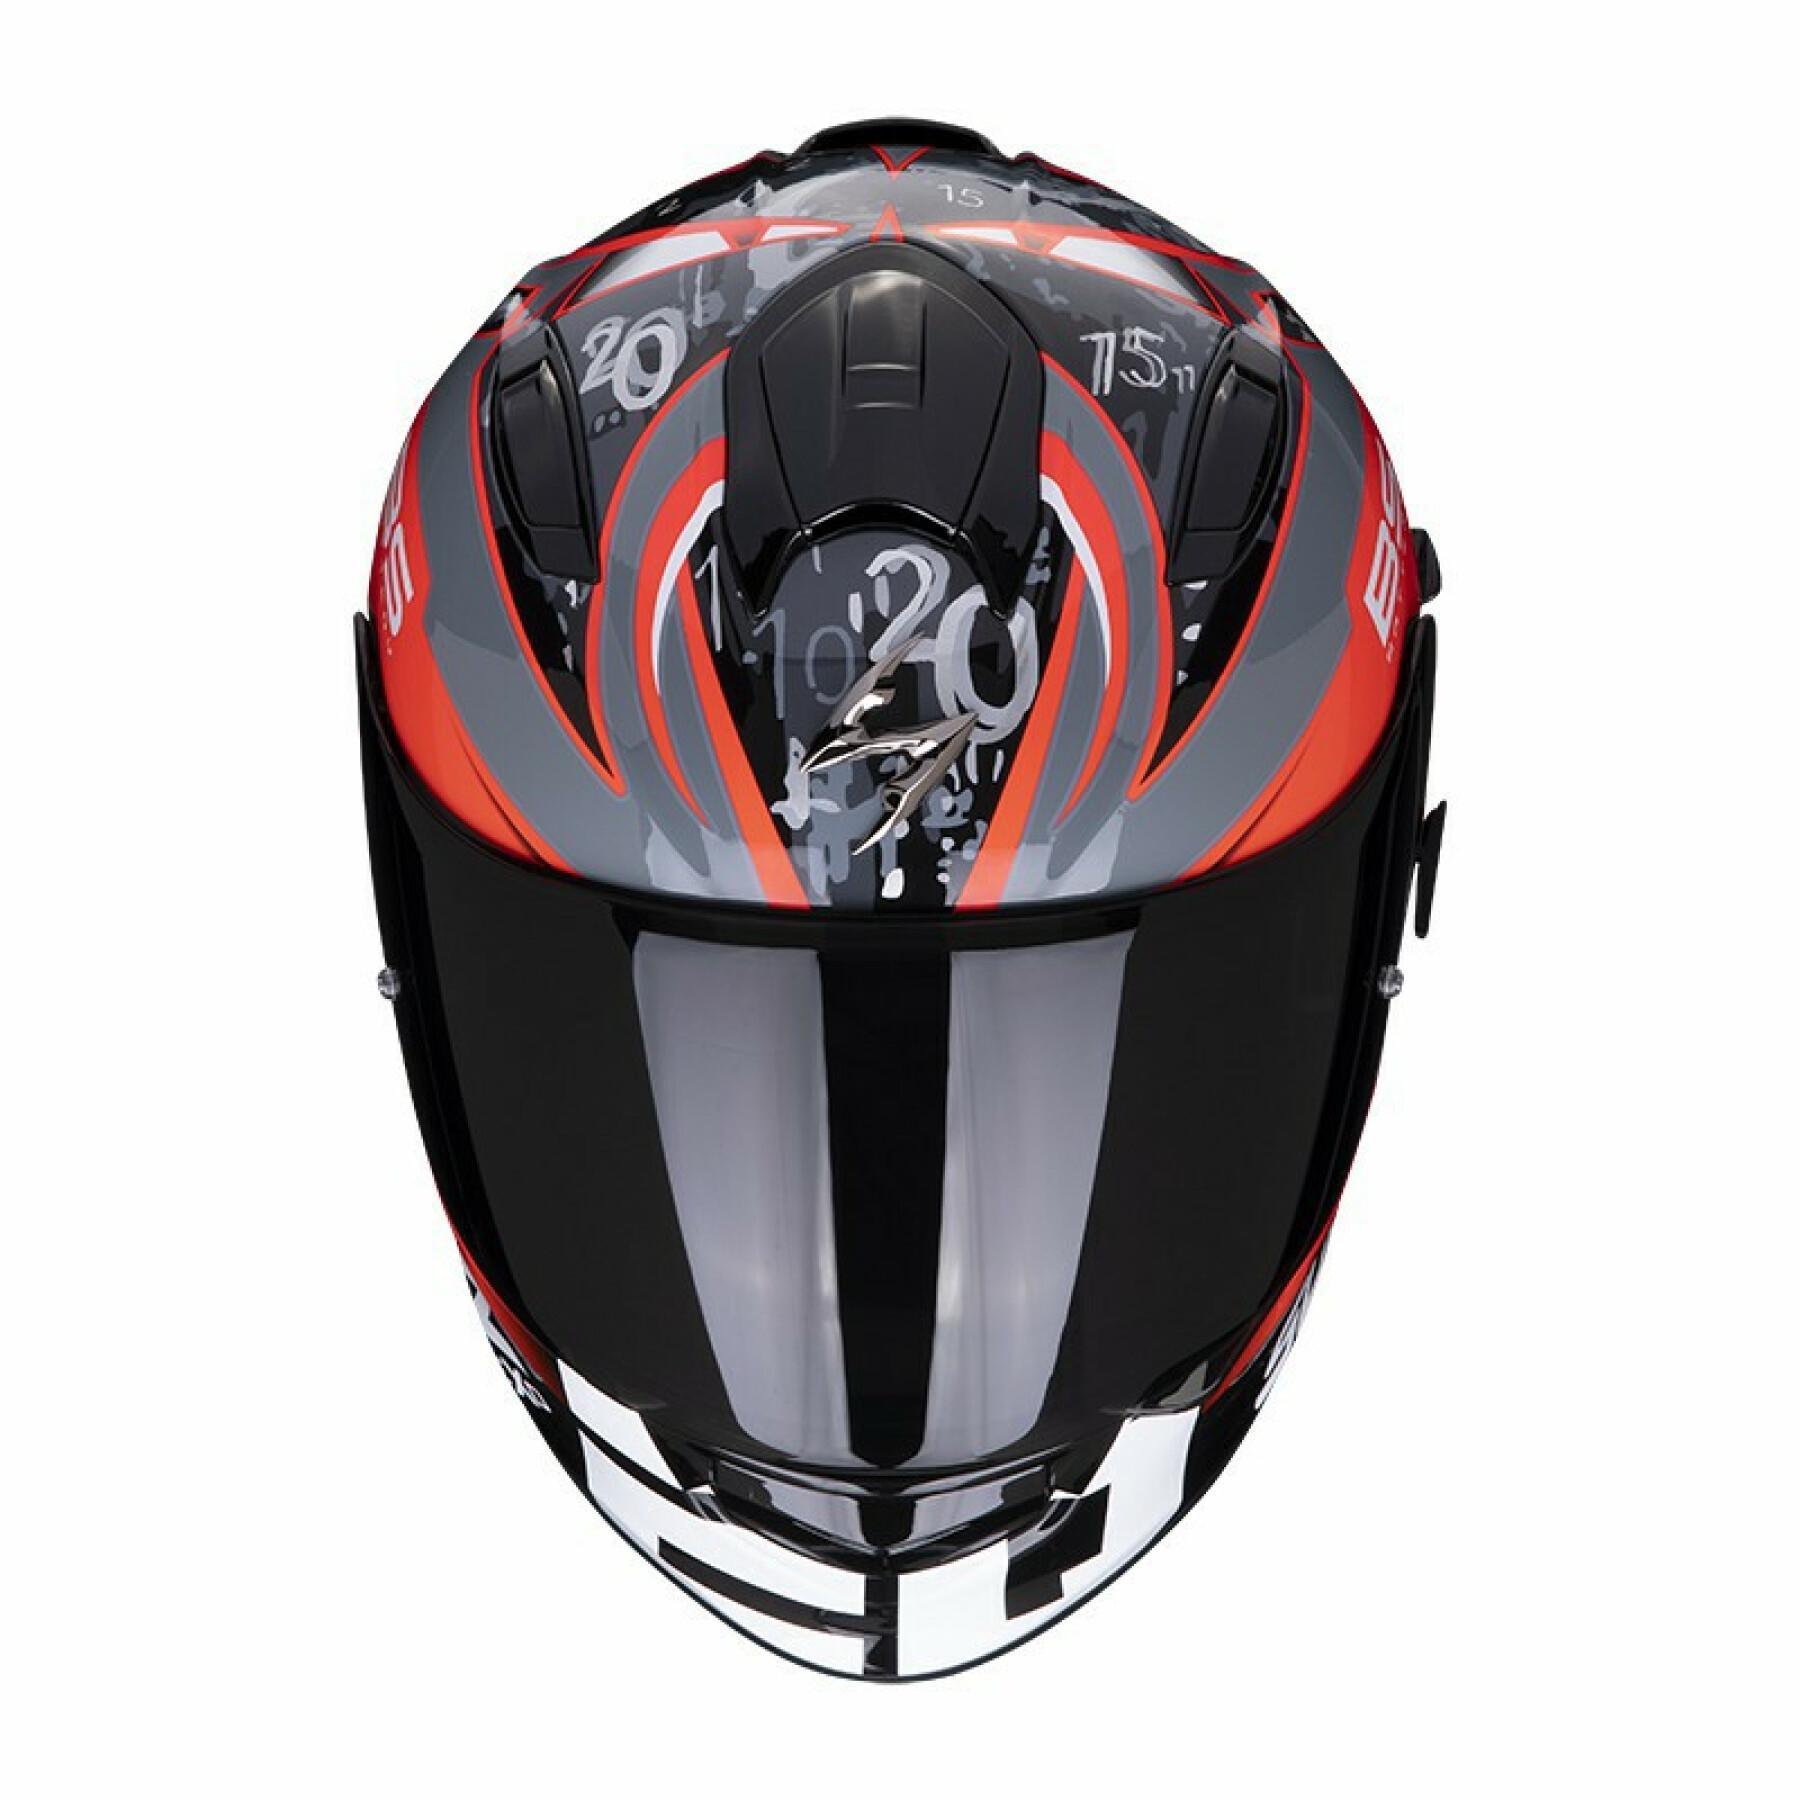 Full face helmet Scorpion Exo-491 FABIO